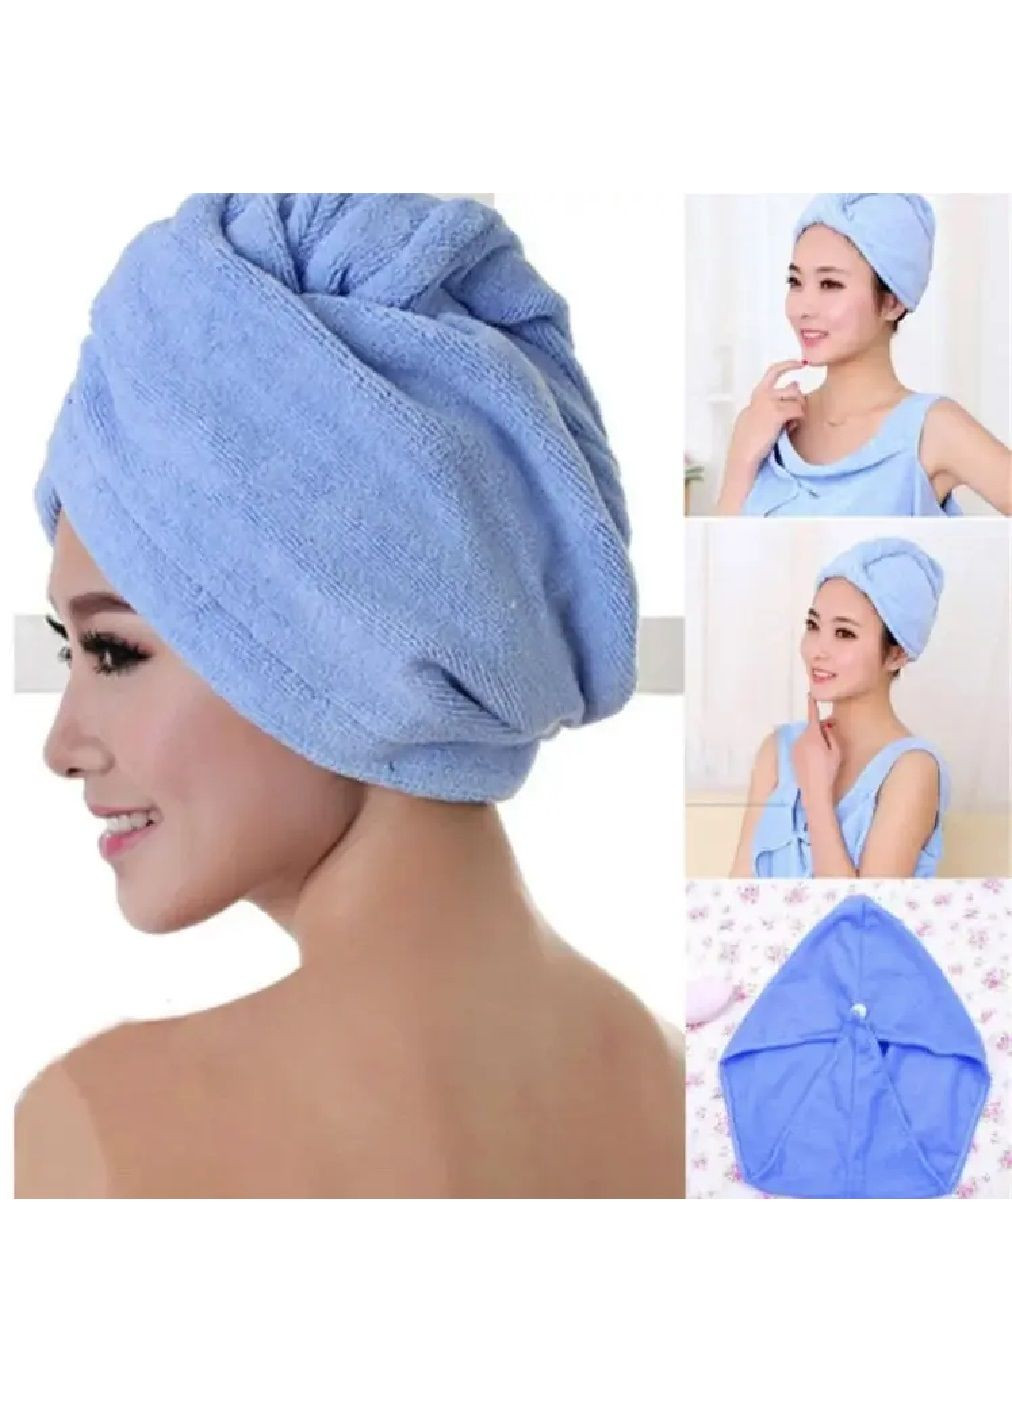 Unbranded полотенце чалма для сушки головы волос после купания в сауне душе ванной микрофибра 60х26 см (476911-prob) светло-голубое однотонный светло-голубой производство -